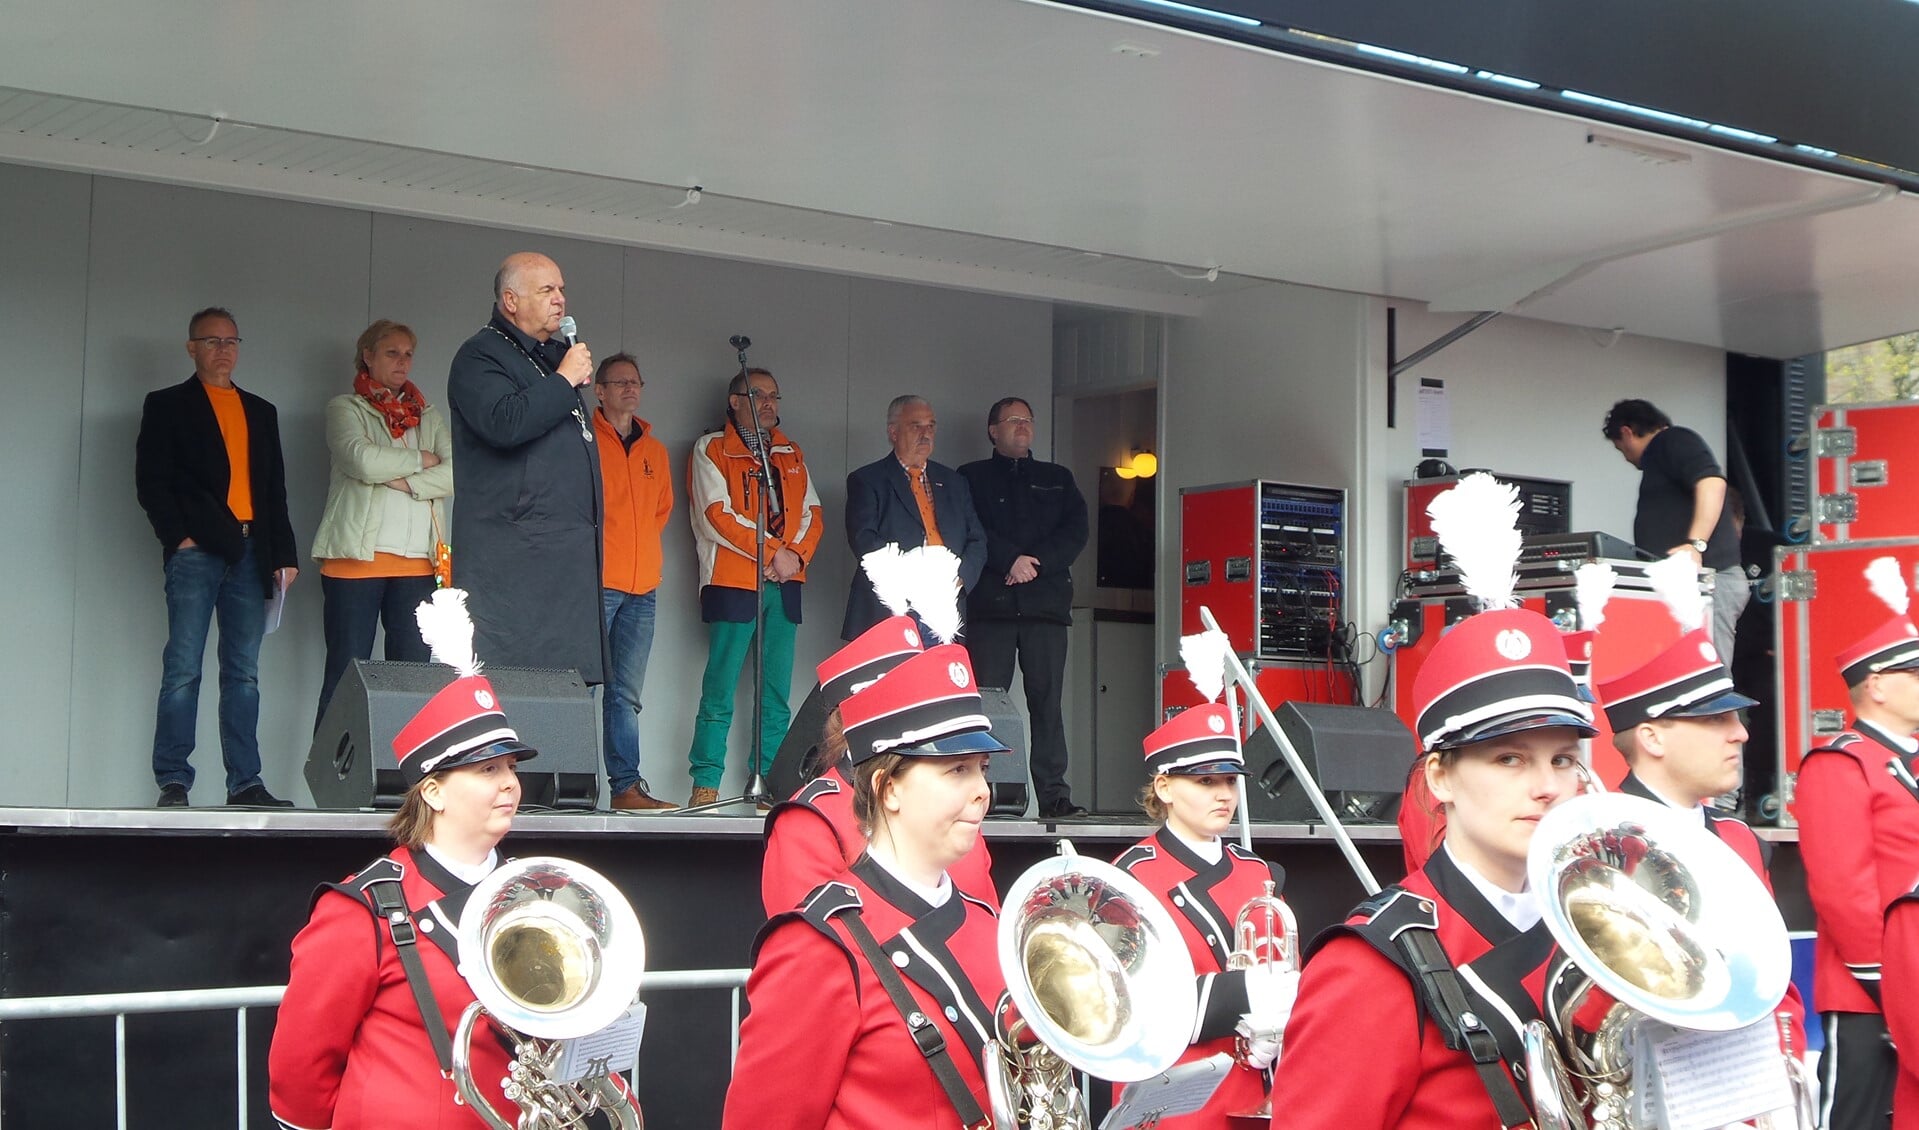 Burgemeester Hertog spreekt de toeschouwers toe. Op de achtergrond het bestuur van de Oranjevereniging.